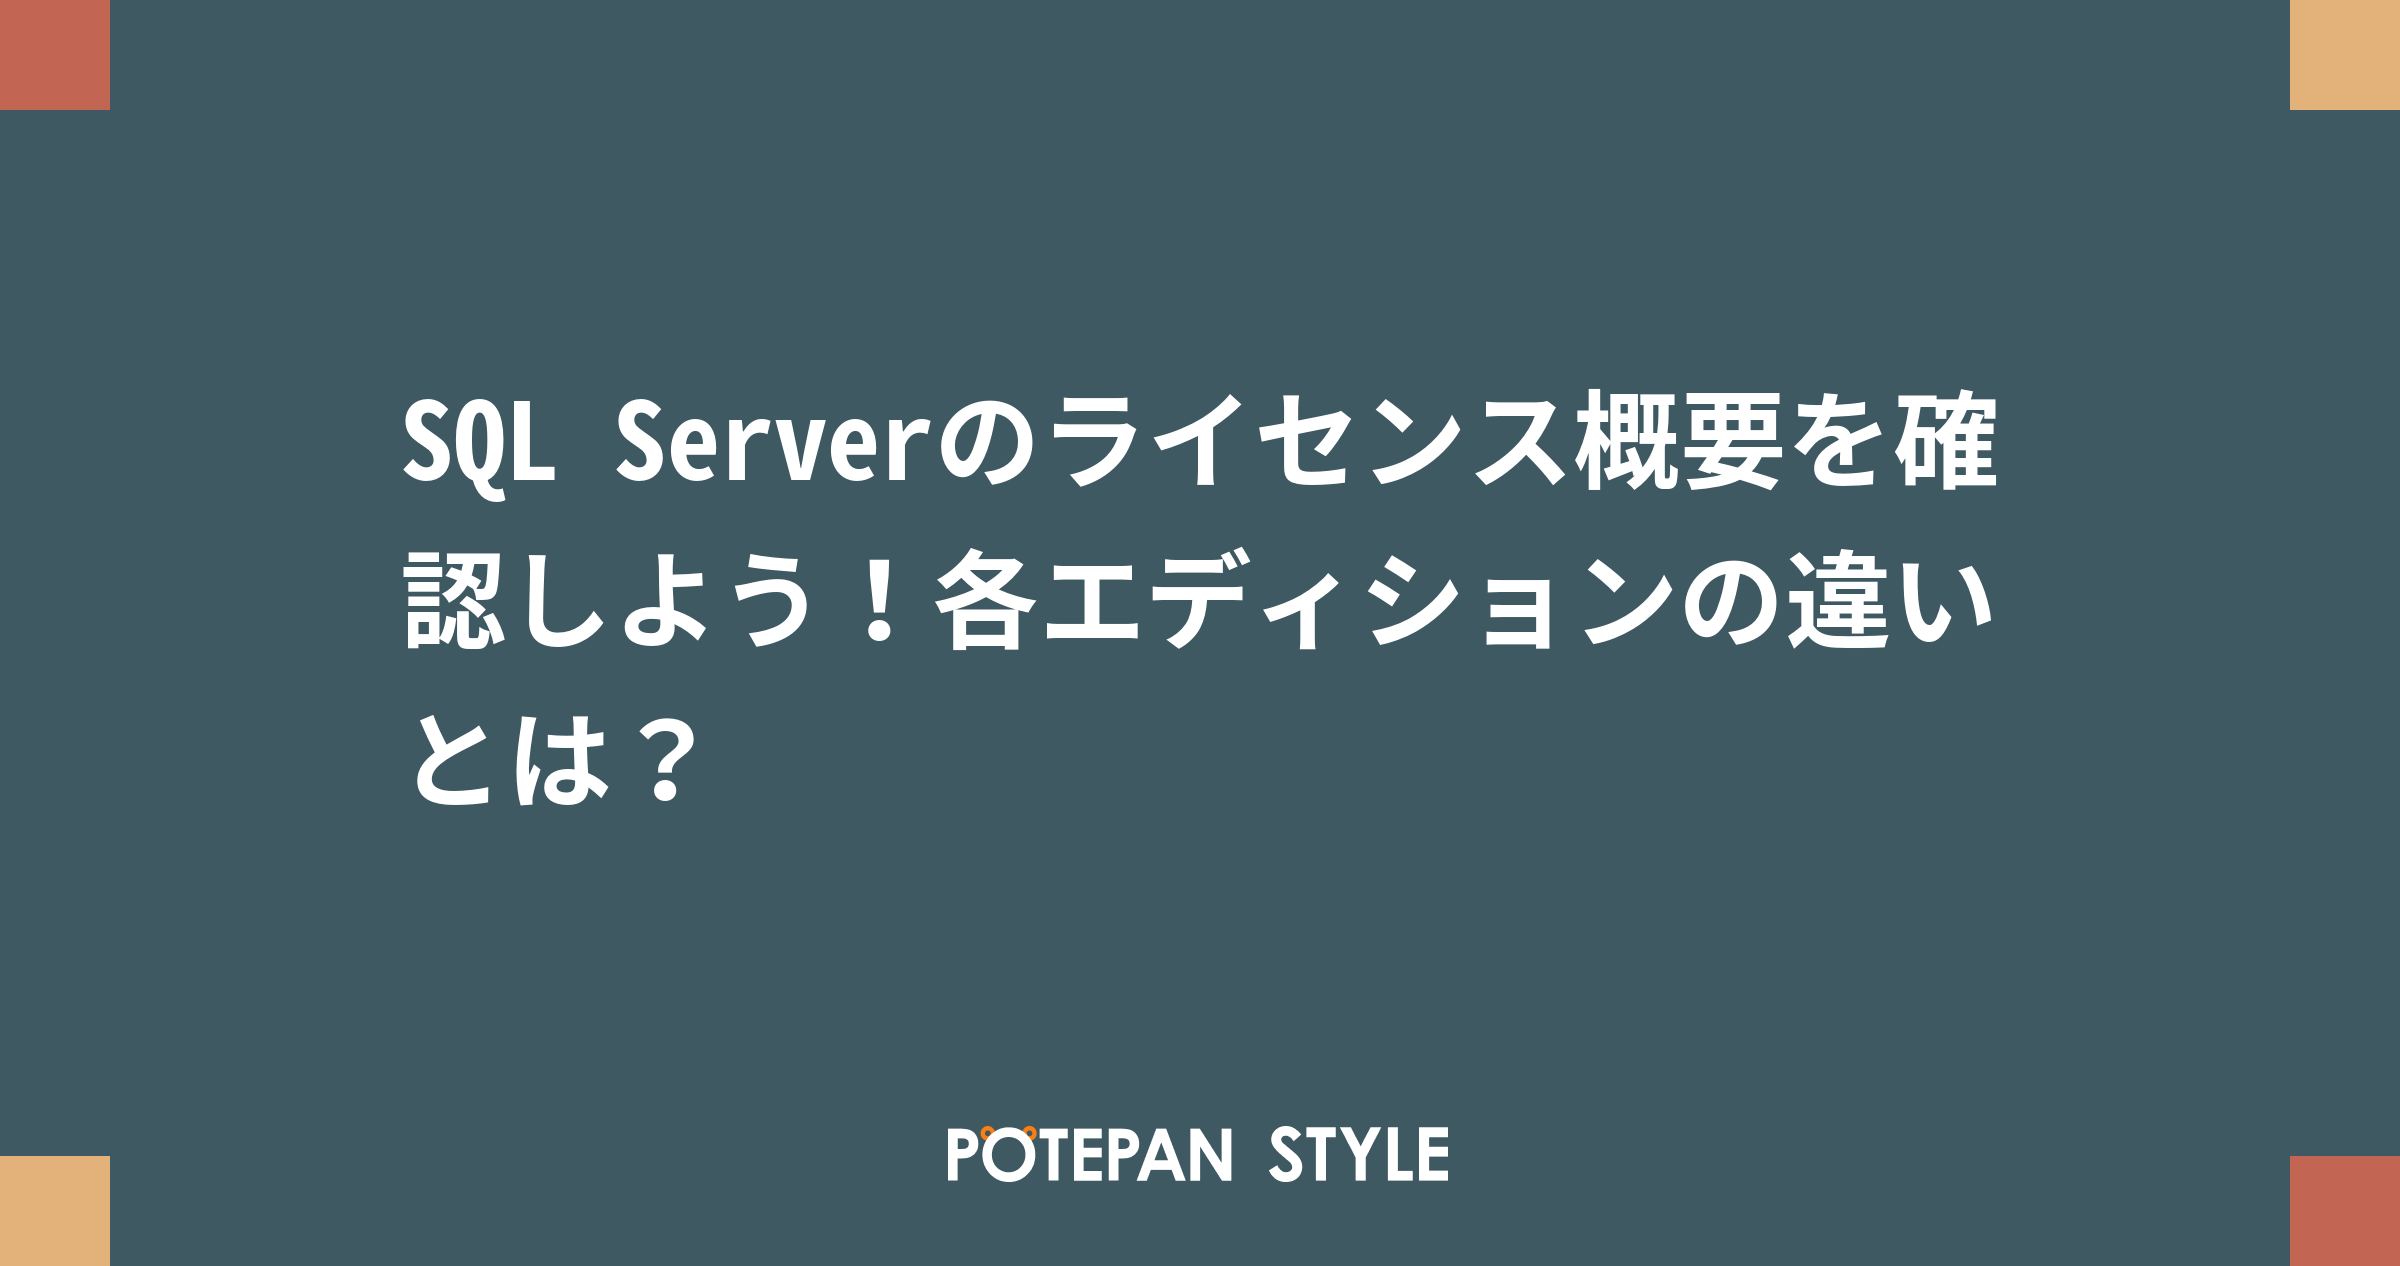 120950円 【SALE／87%OFF】 Microsoft SQL Server 2019 Standard Edition 日本語 ダウンロード版 1ライセンス